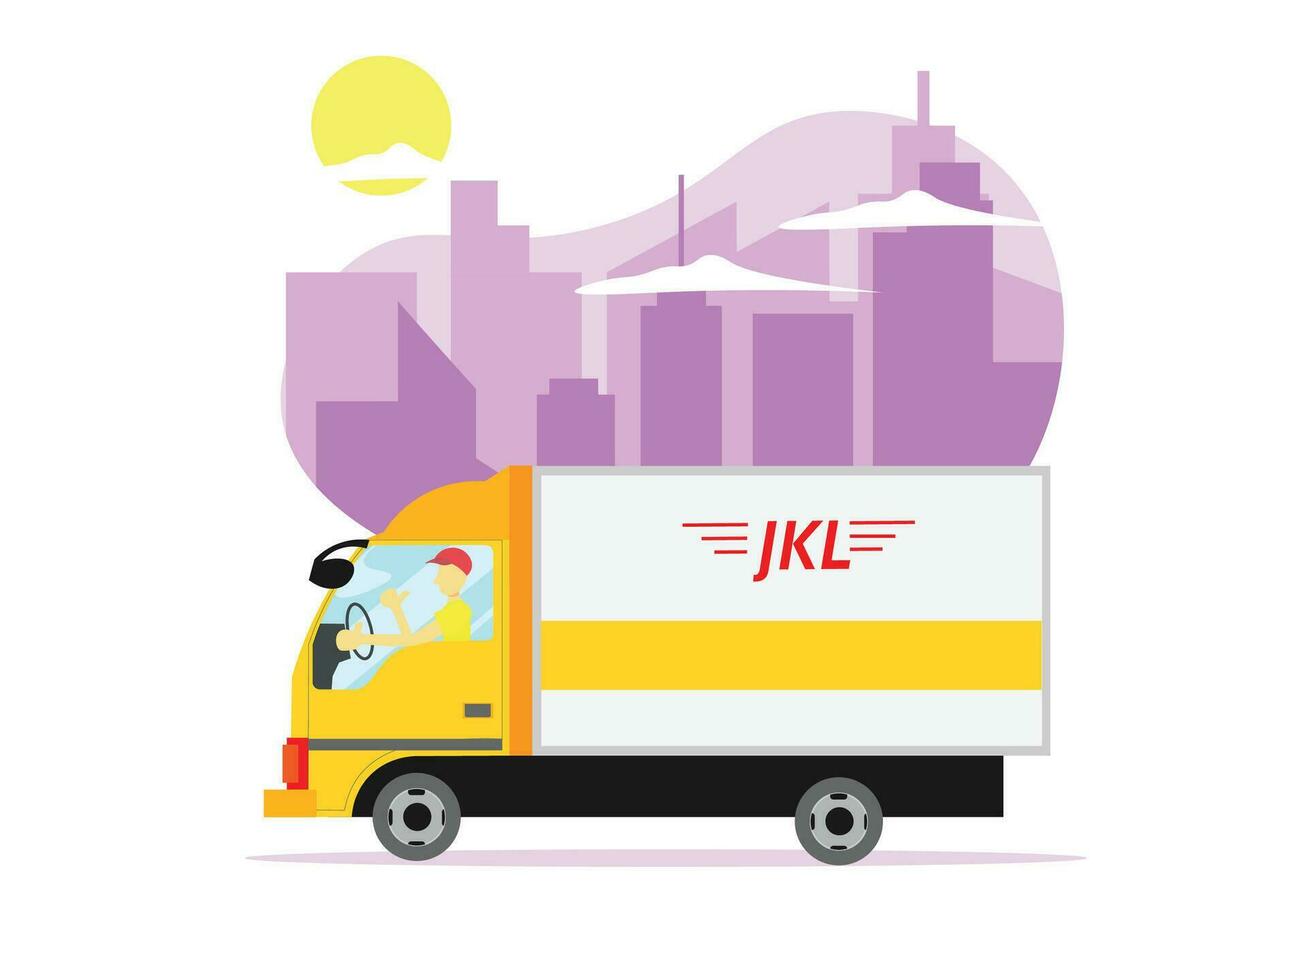 levering Mens het rijden vrachtauto Aan de manier naar leveren pakketjes van klanten online winkel vector